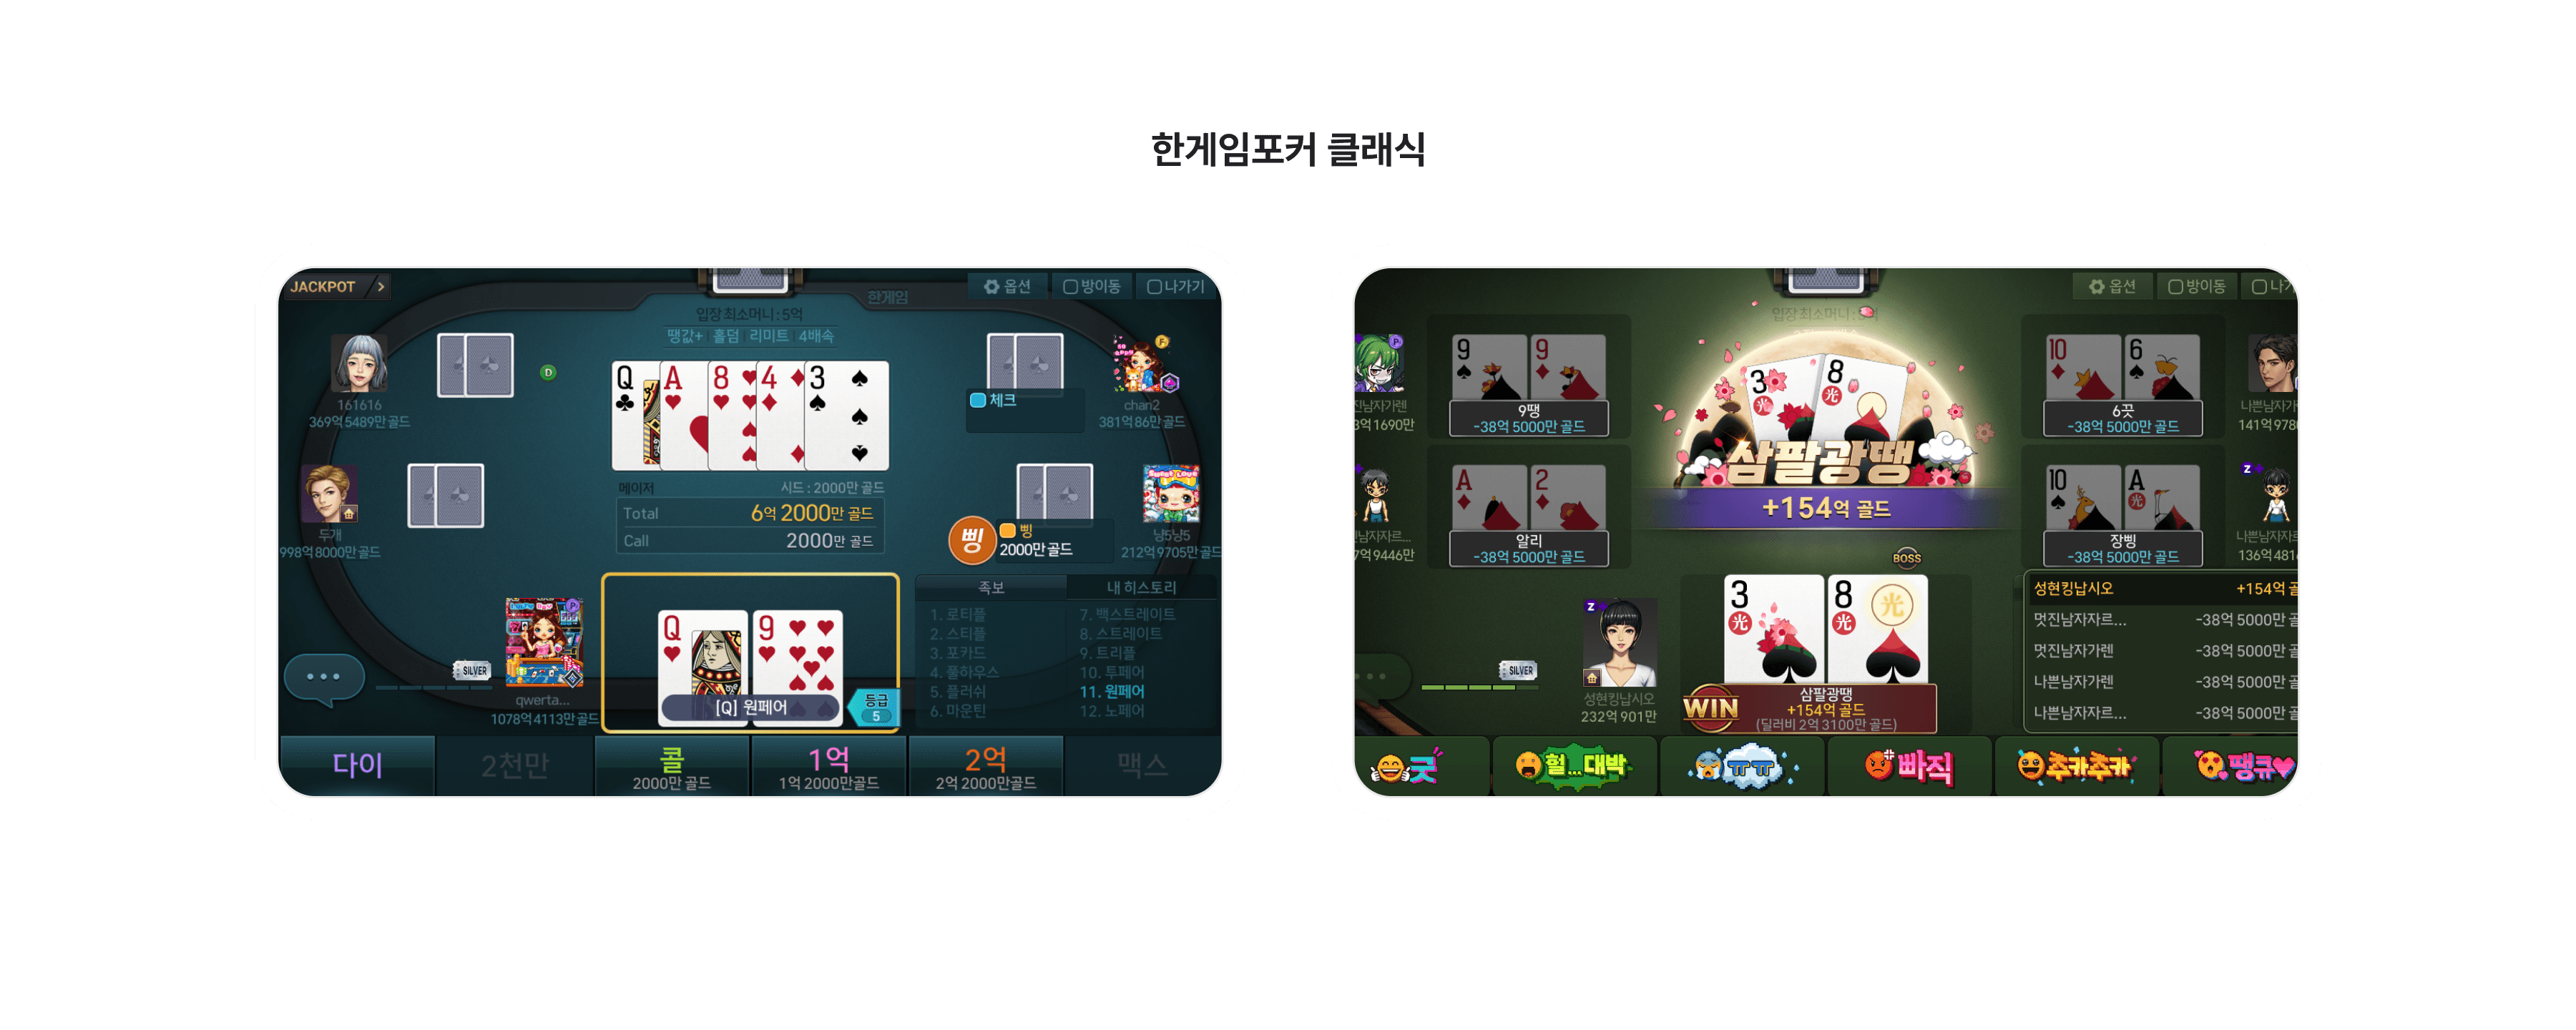 poker_5